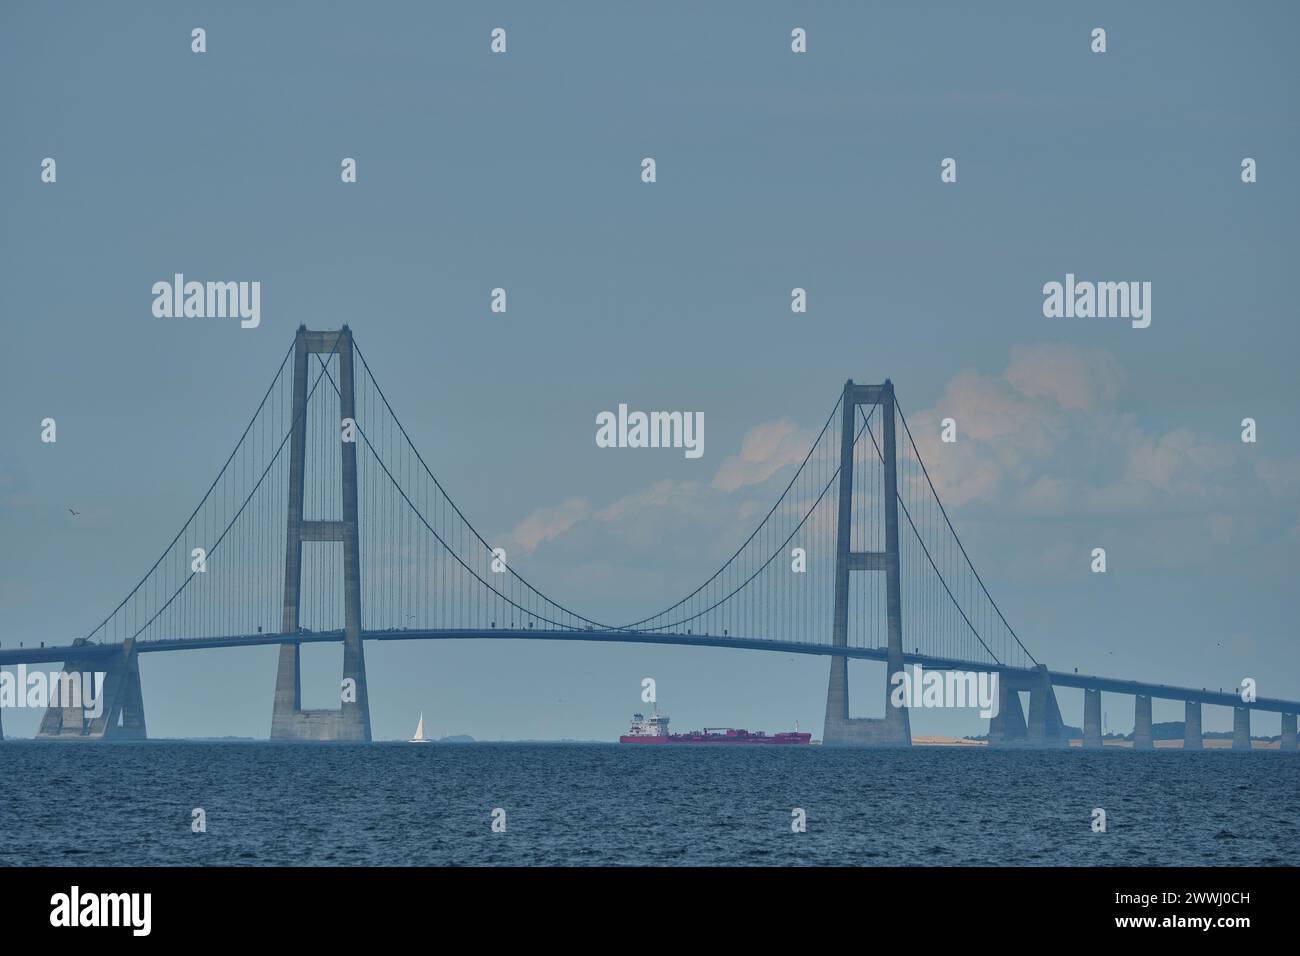 Great Storebelt pont suspendu reliant les îles Denmarks à travers la mer baltique par une journée ensoleillée et brumeuse. Banque D'Images